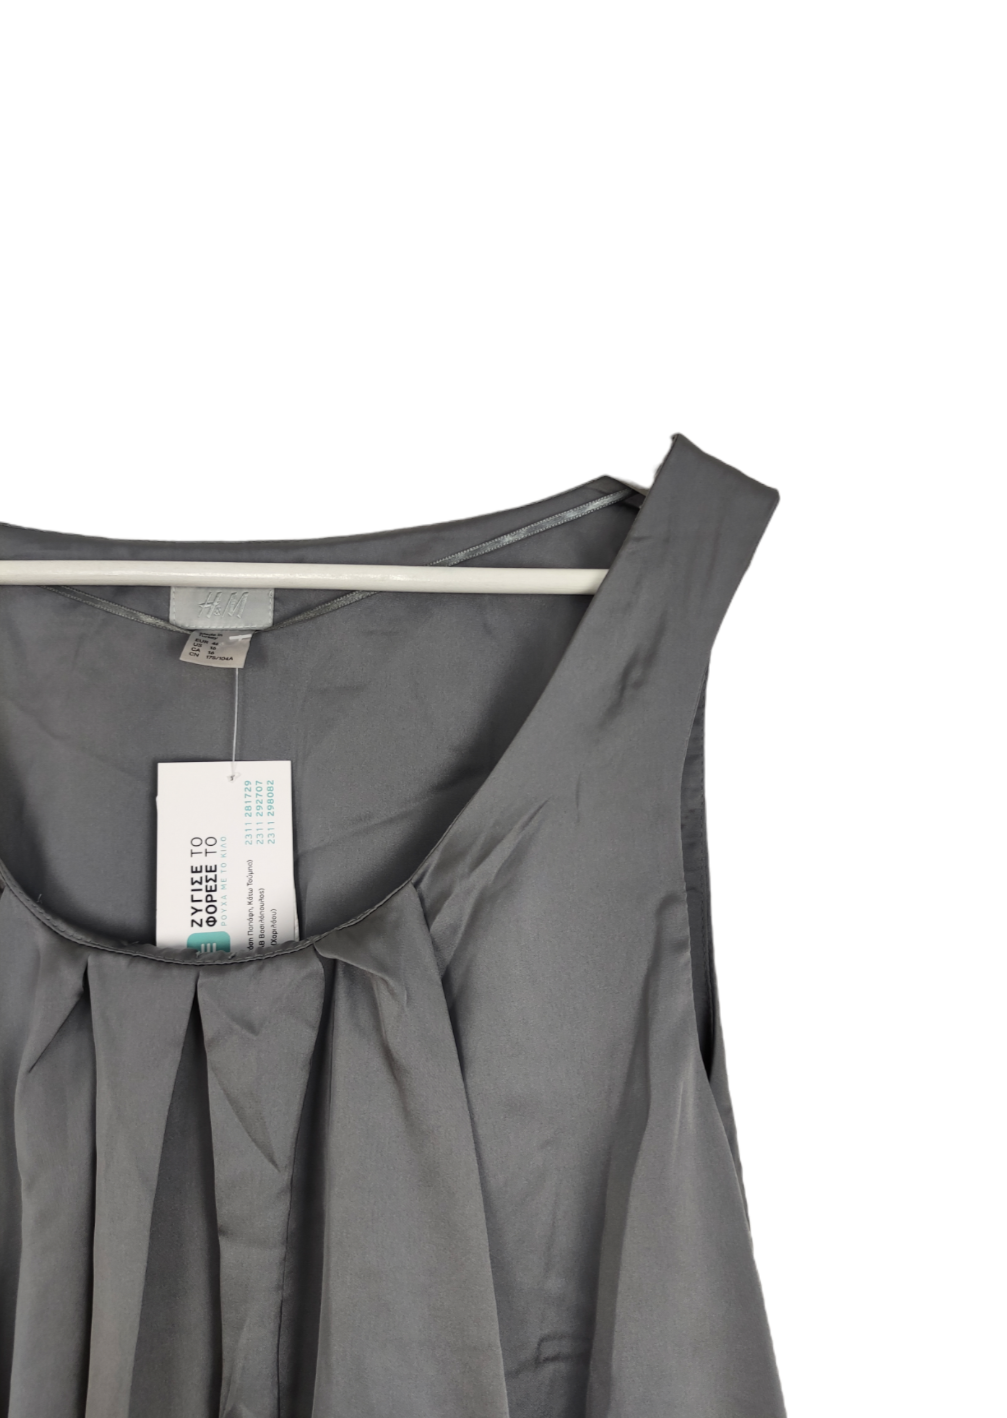 Αμάνικη, Σατινέ Γυναικεία Μπλούζα H&M σε Ανθρακί χρώμα (Large)